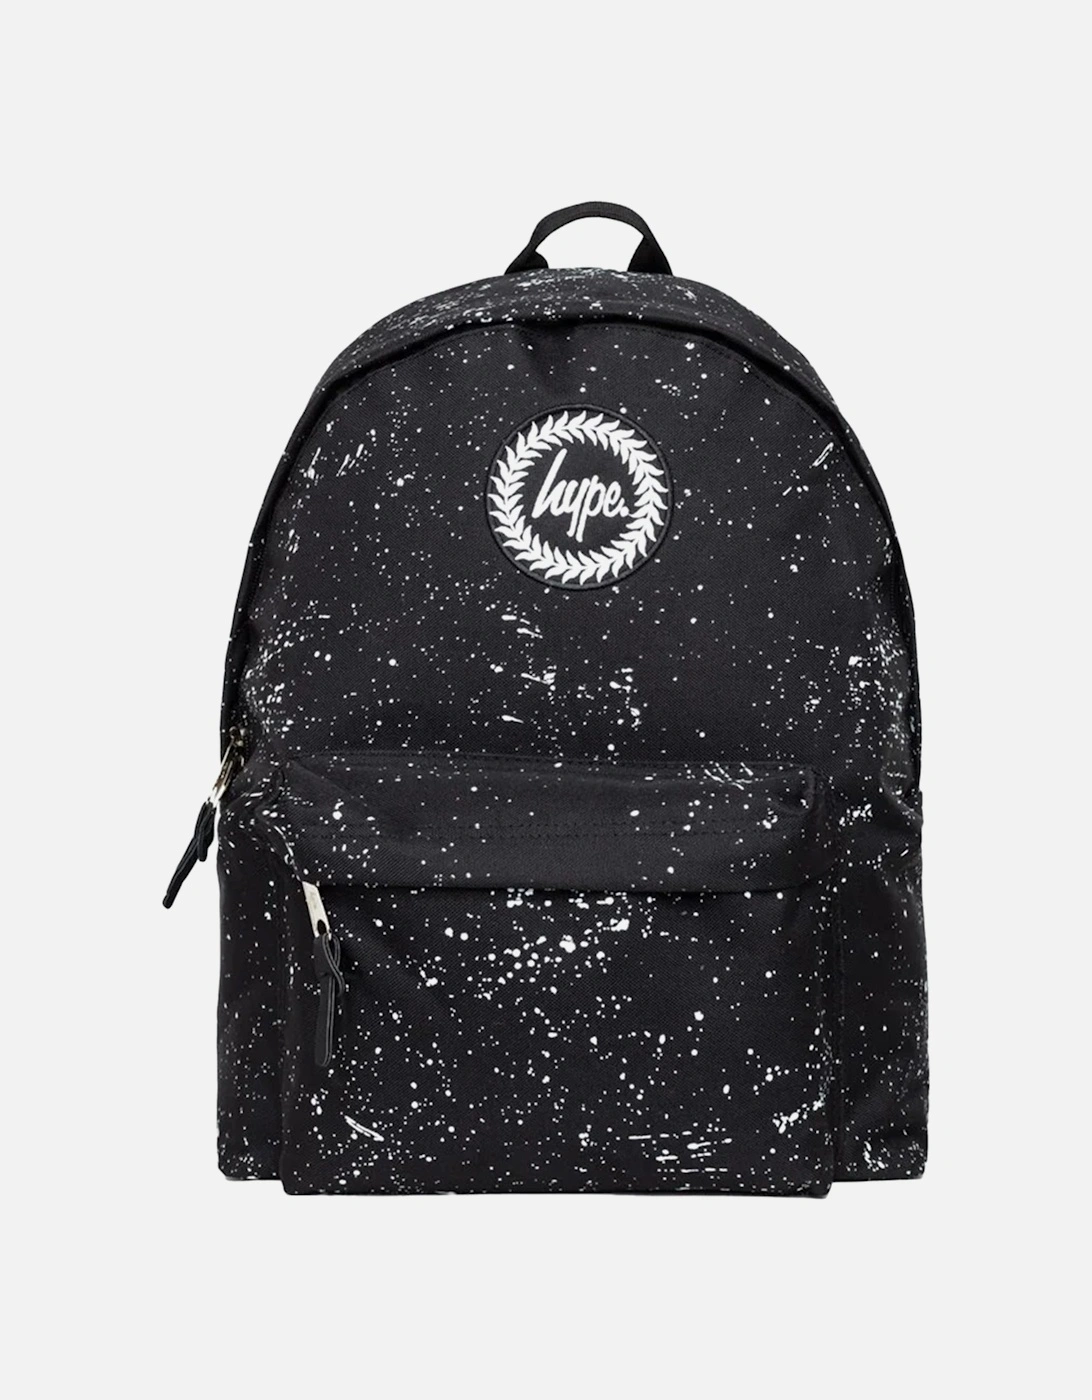 Speckle Pattern Backpack (Black), 8 of 7